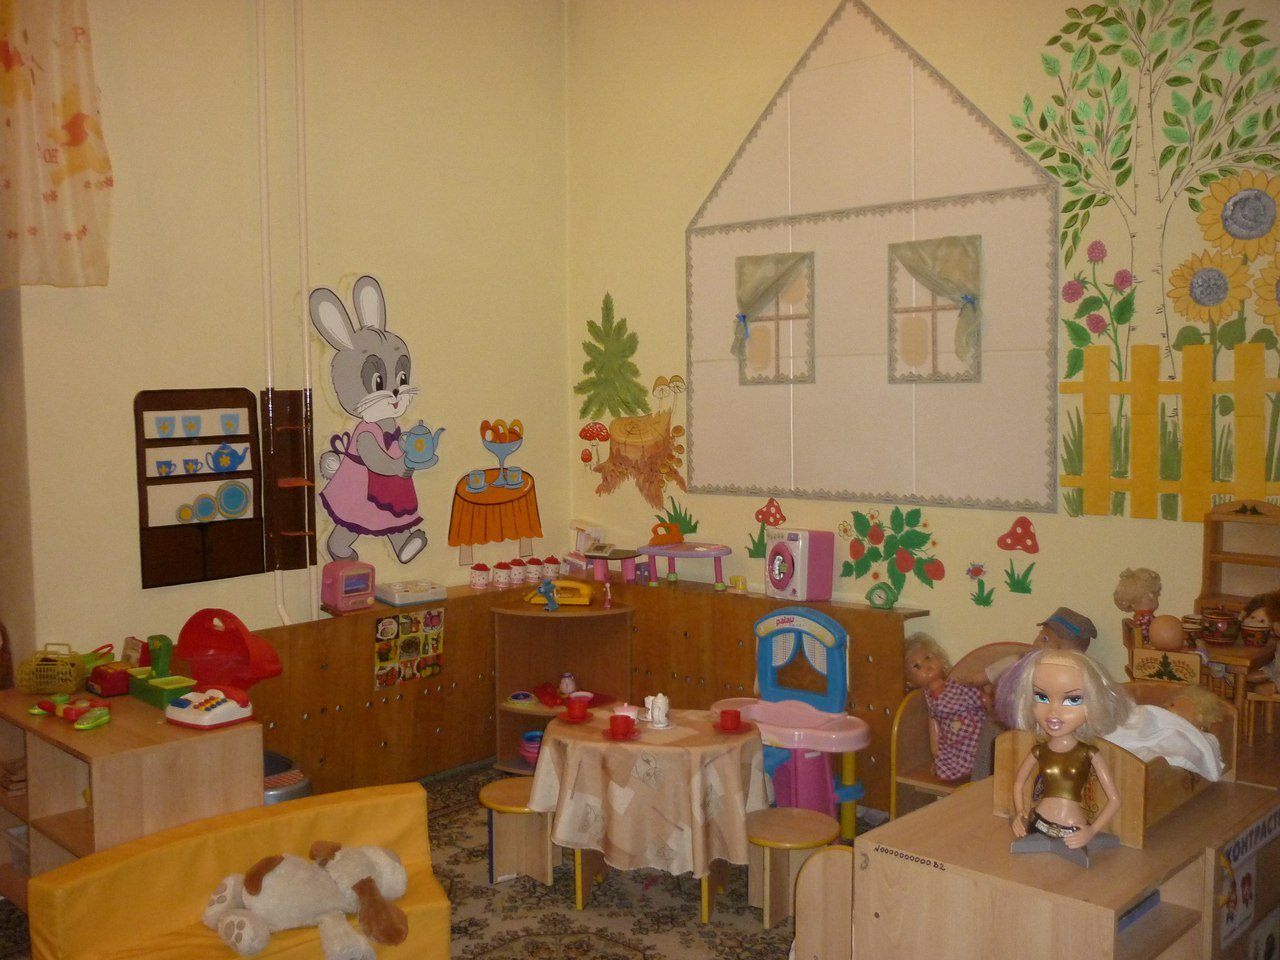 уголок дом в детском саду оформление фото